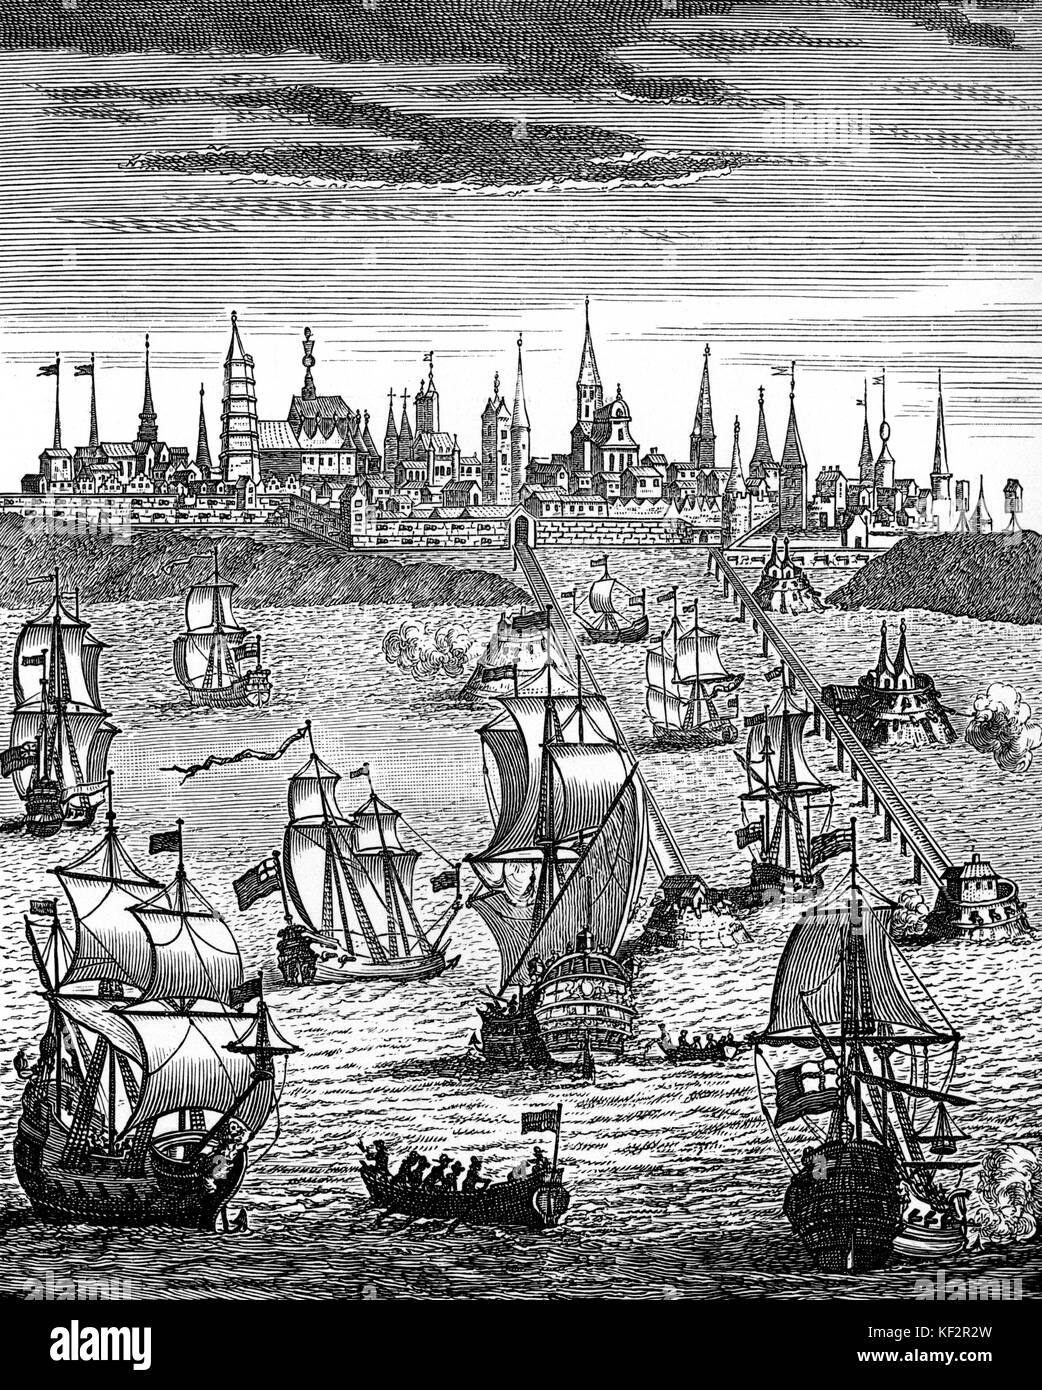 L'escadron anglais arrivant à Dunkerque. Sous-titre suivant : 'Anglais transportant des troupes de l'Escadron de prendre possession de Dunkerque". Dunkerque, 'commune' dans le Nord de la France. À partir de 'l'histoire de la reine Anne", 1740. Banque D'Images